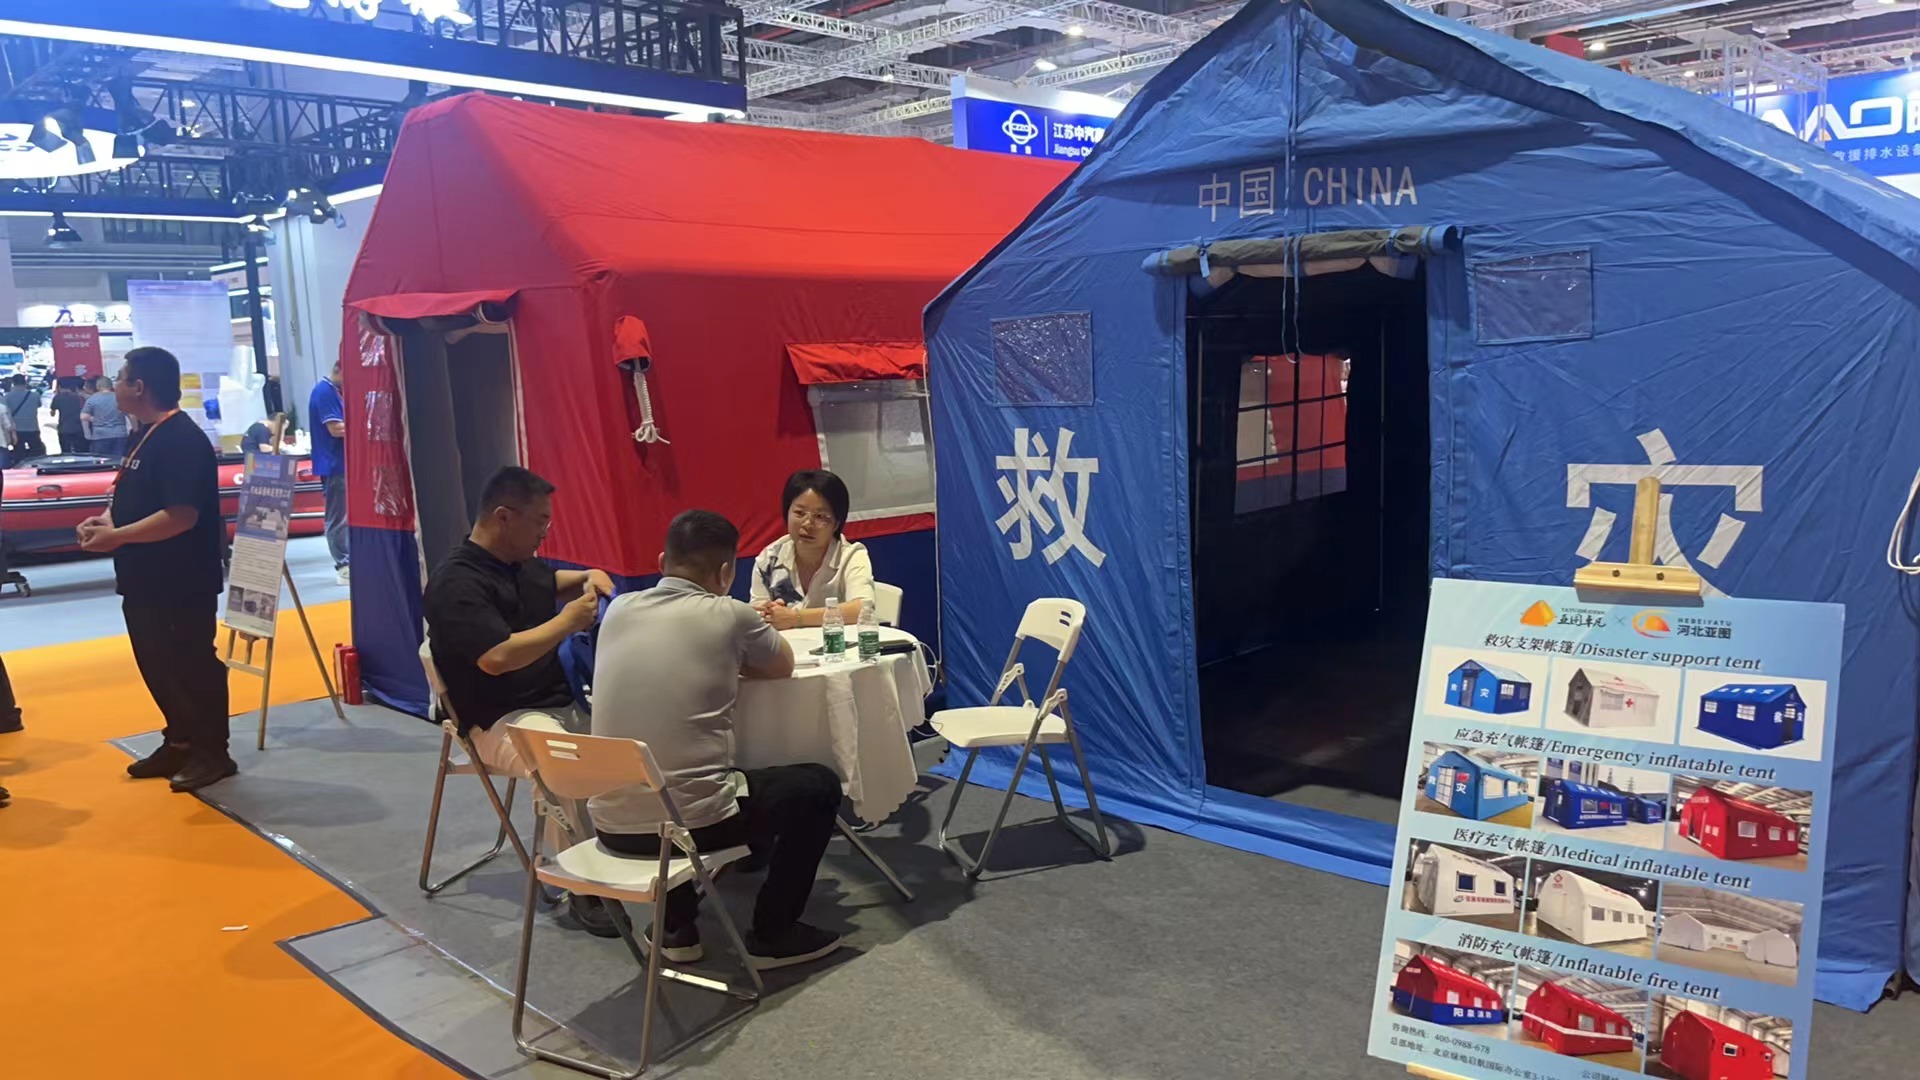 河北亚图参加2024上海第三届国际应急减灾和救援博览会